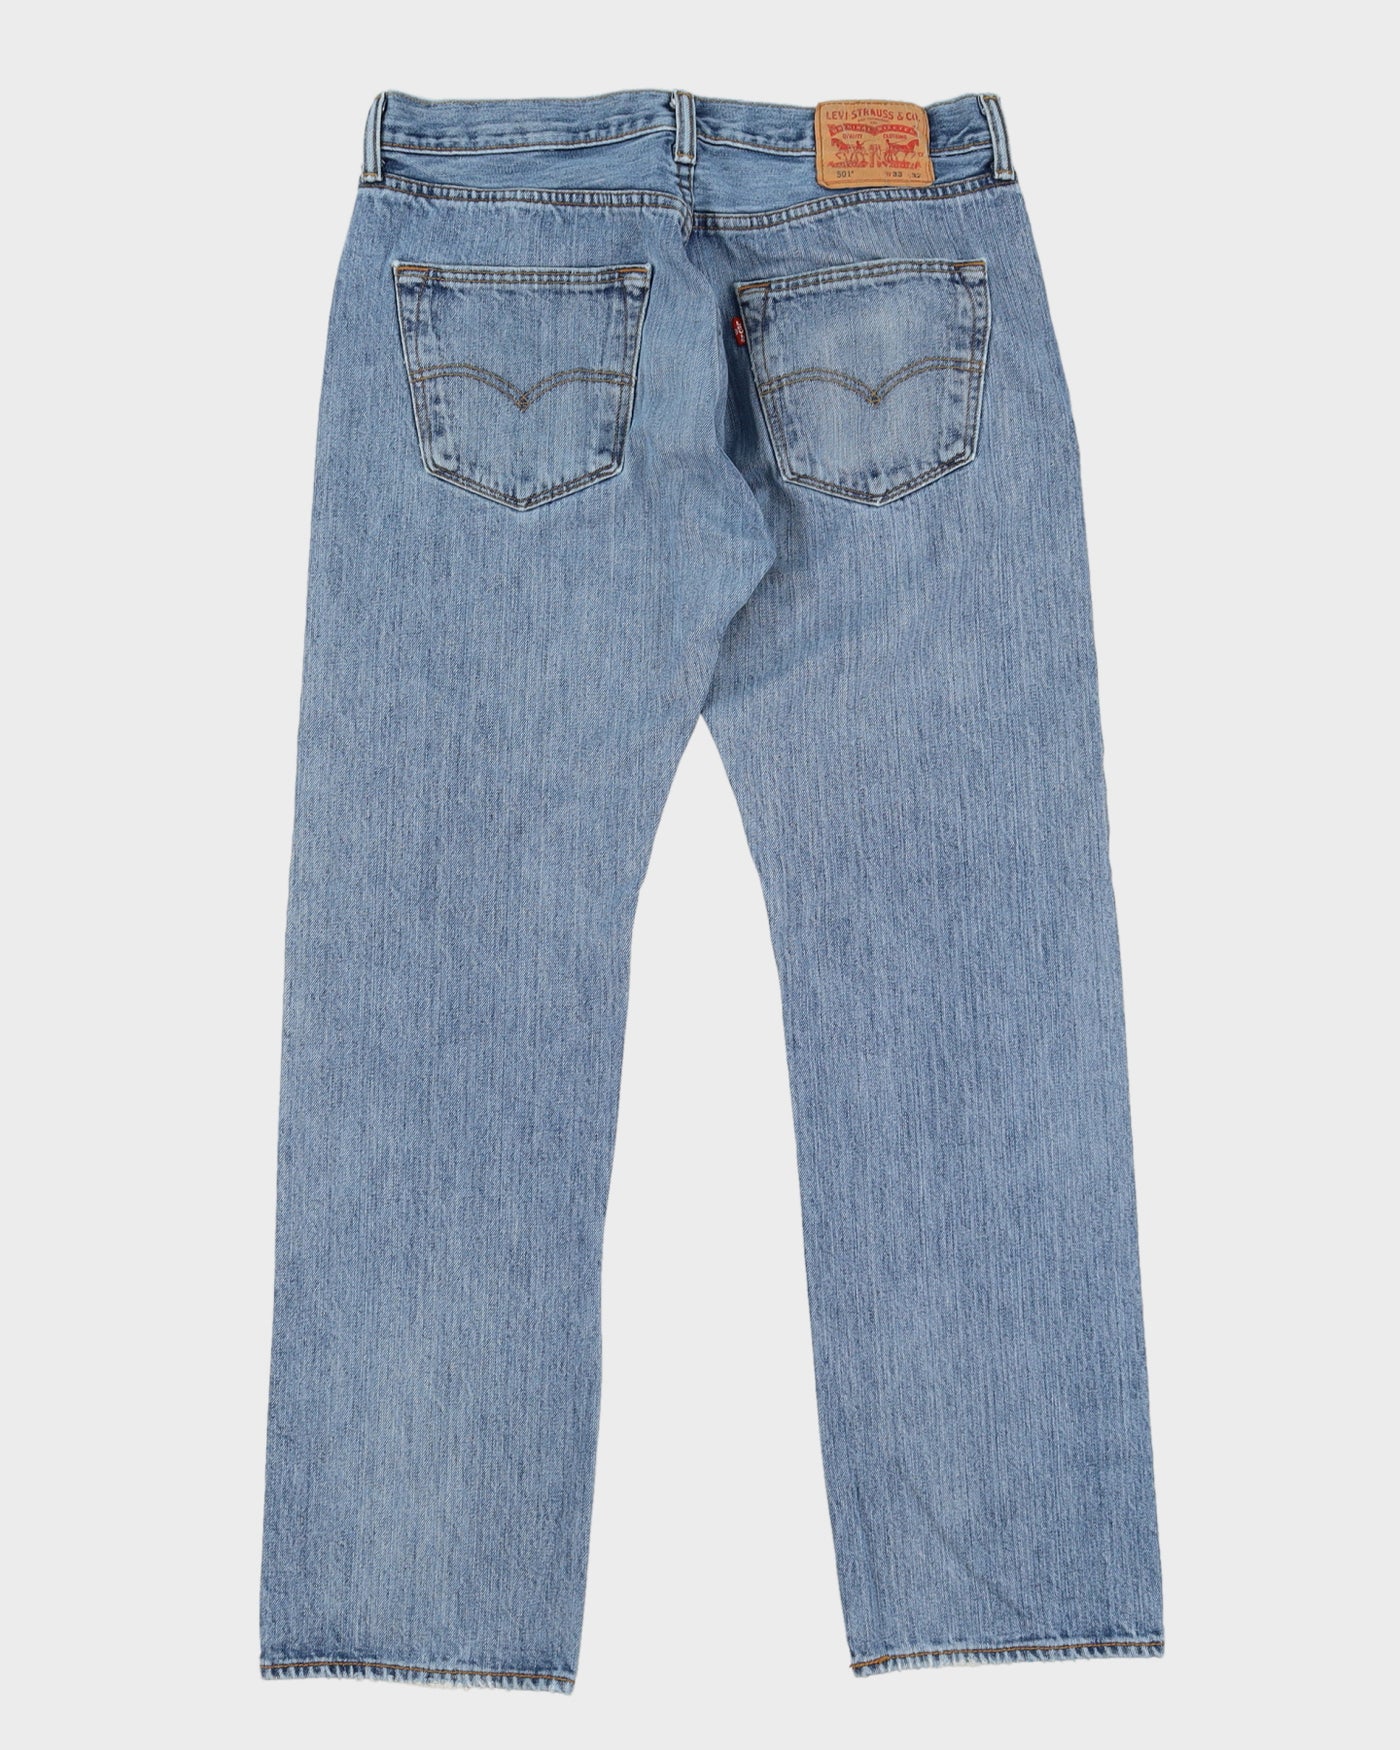 Levi's 501 Blue Jeans - W34 L31